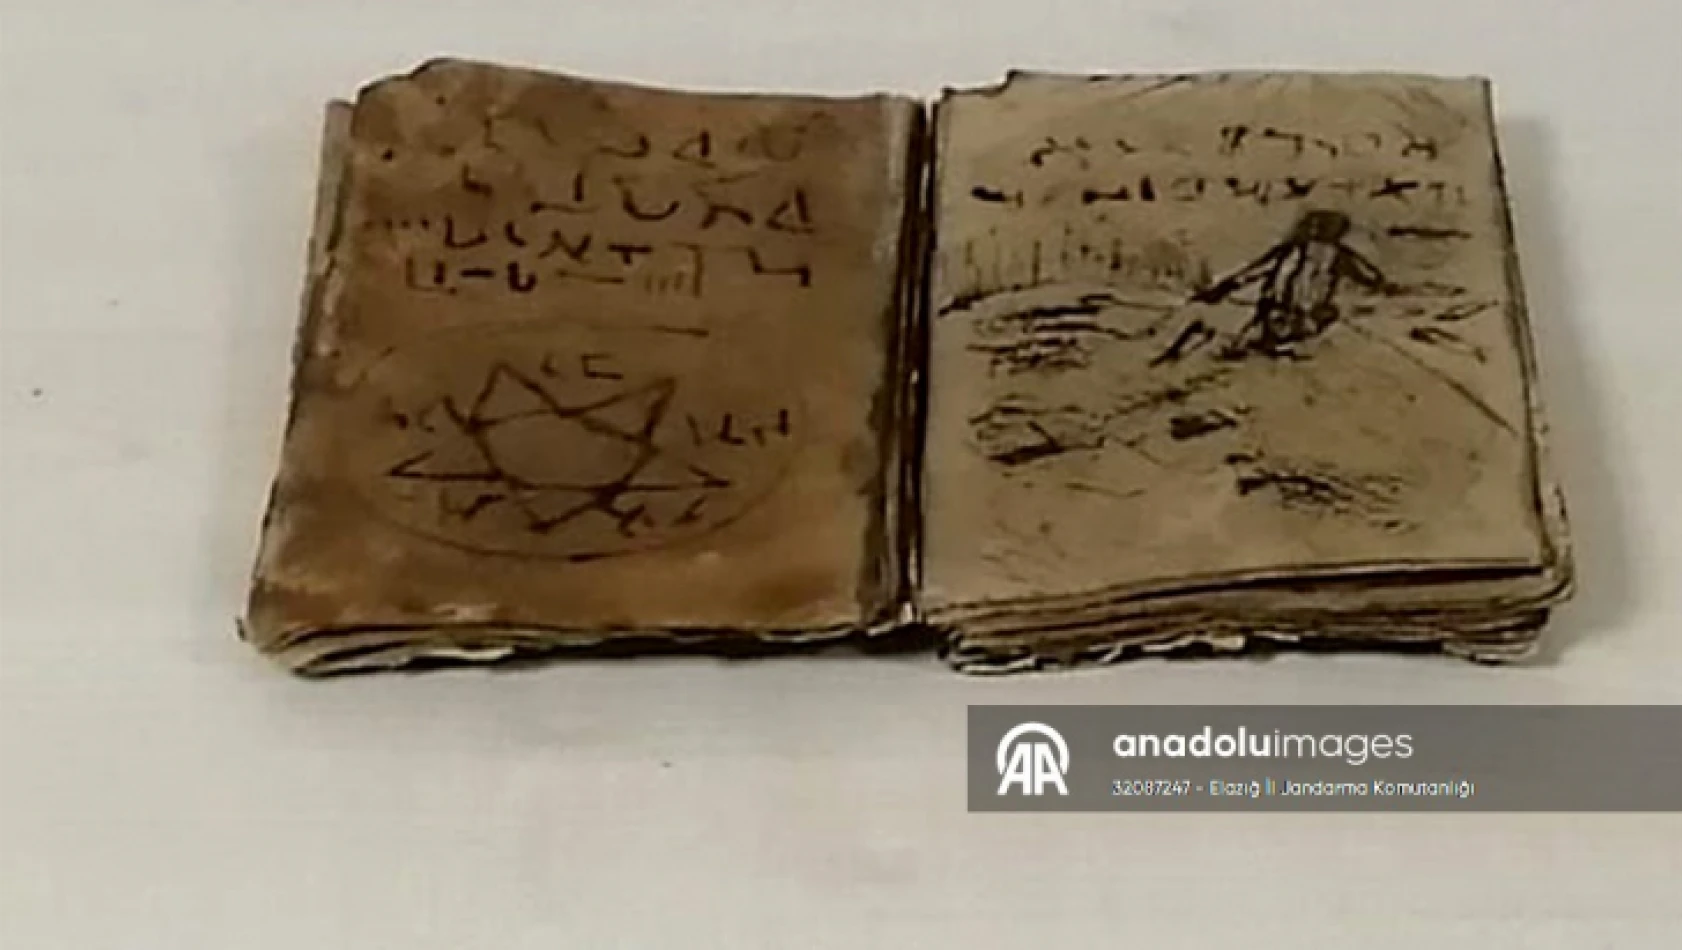 Elazığ'da tarihi olduğu değerlendirilen kitabı satmak isteyen şüpheli suçüstü yakalandı